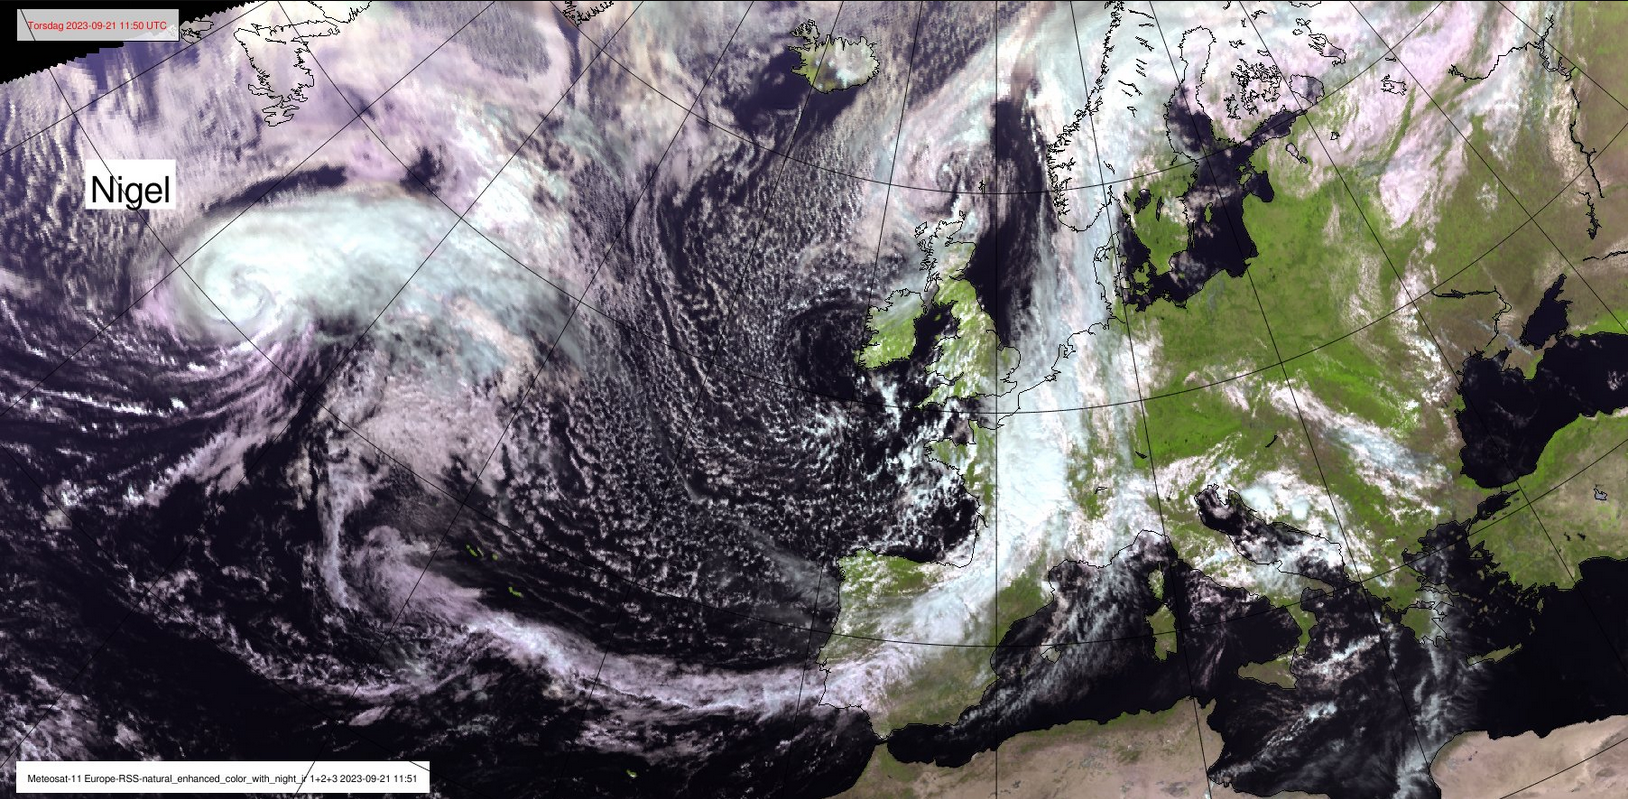 Syklonen Nigel, som i neste uke vil påvirke været i Norge, vil treffe Rogaland først